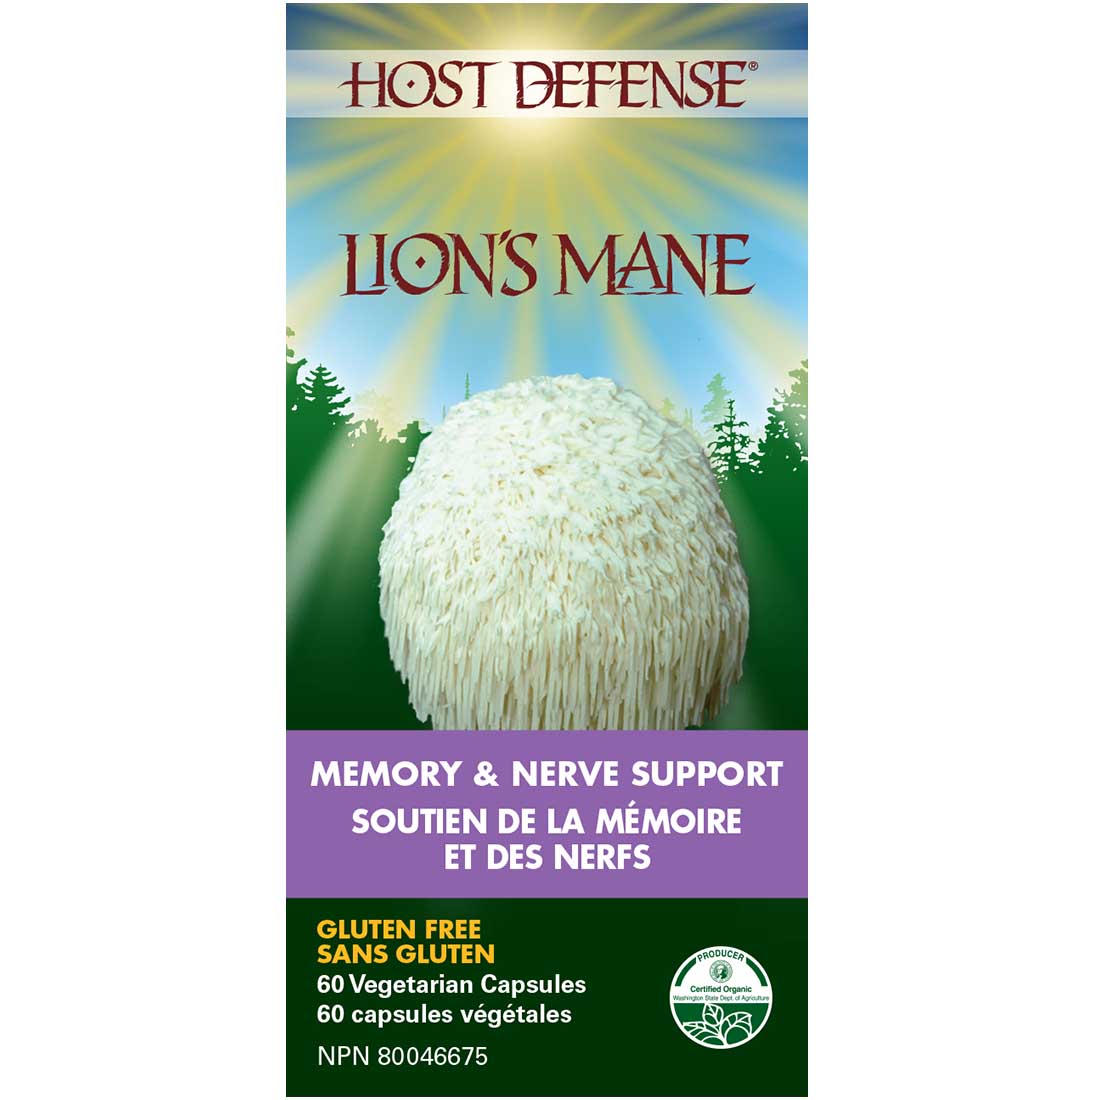 Host Defense Lion's Mane, Memory & Nerve Support